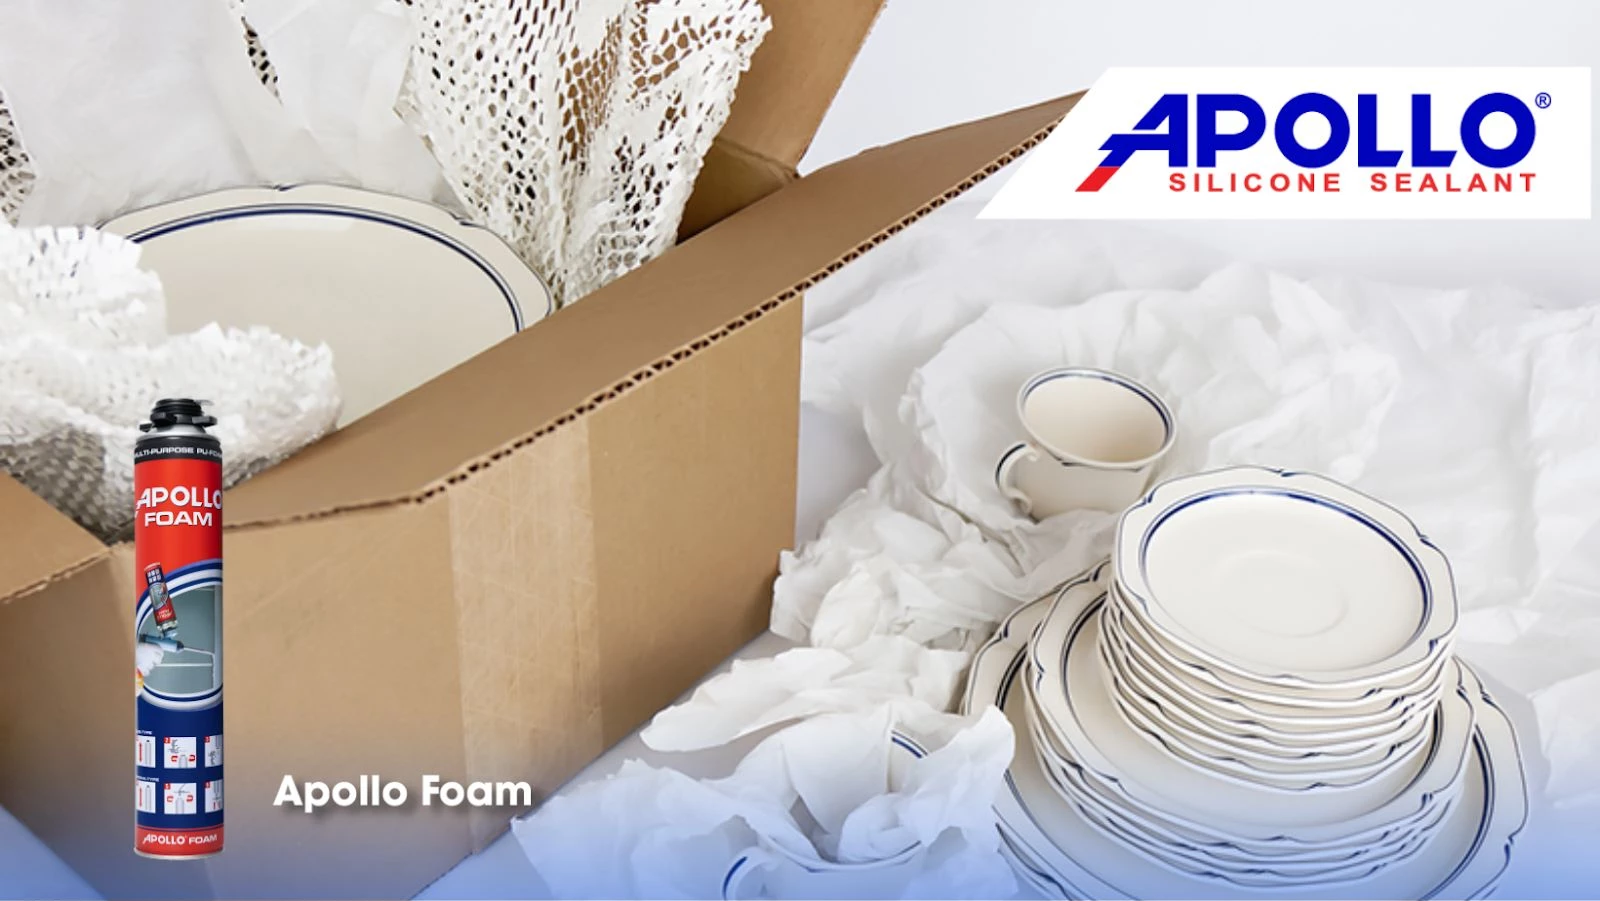 Keo Apollo PU Foam đảm bảo an toàn cho những món hàng dễ vỡ như sứ